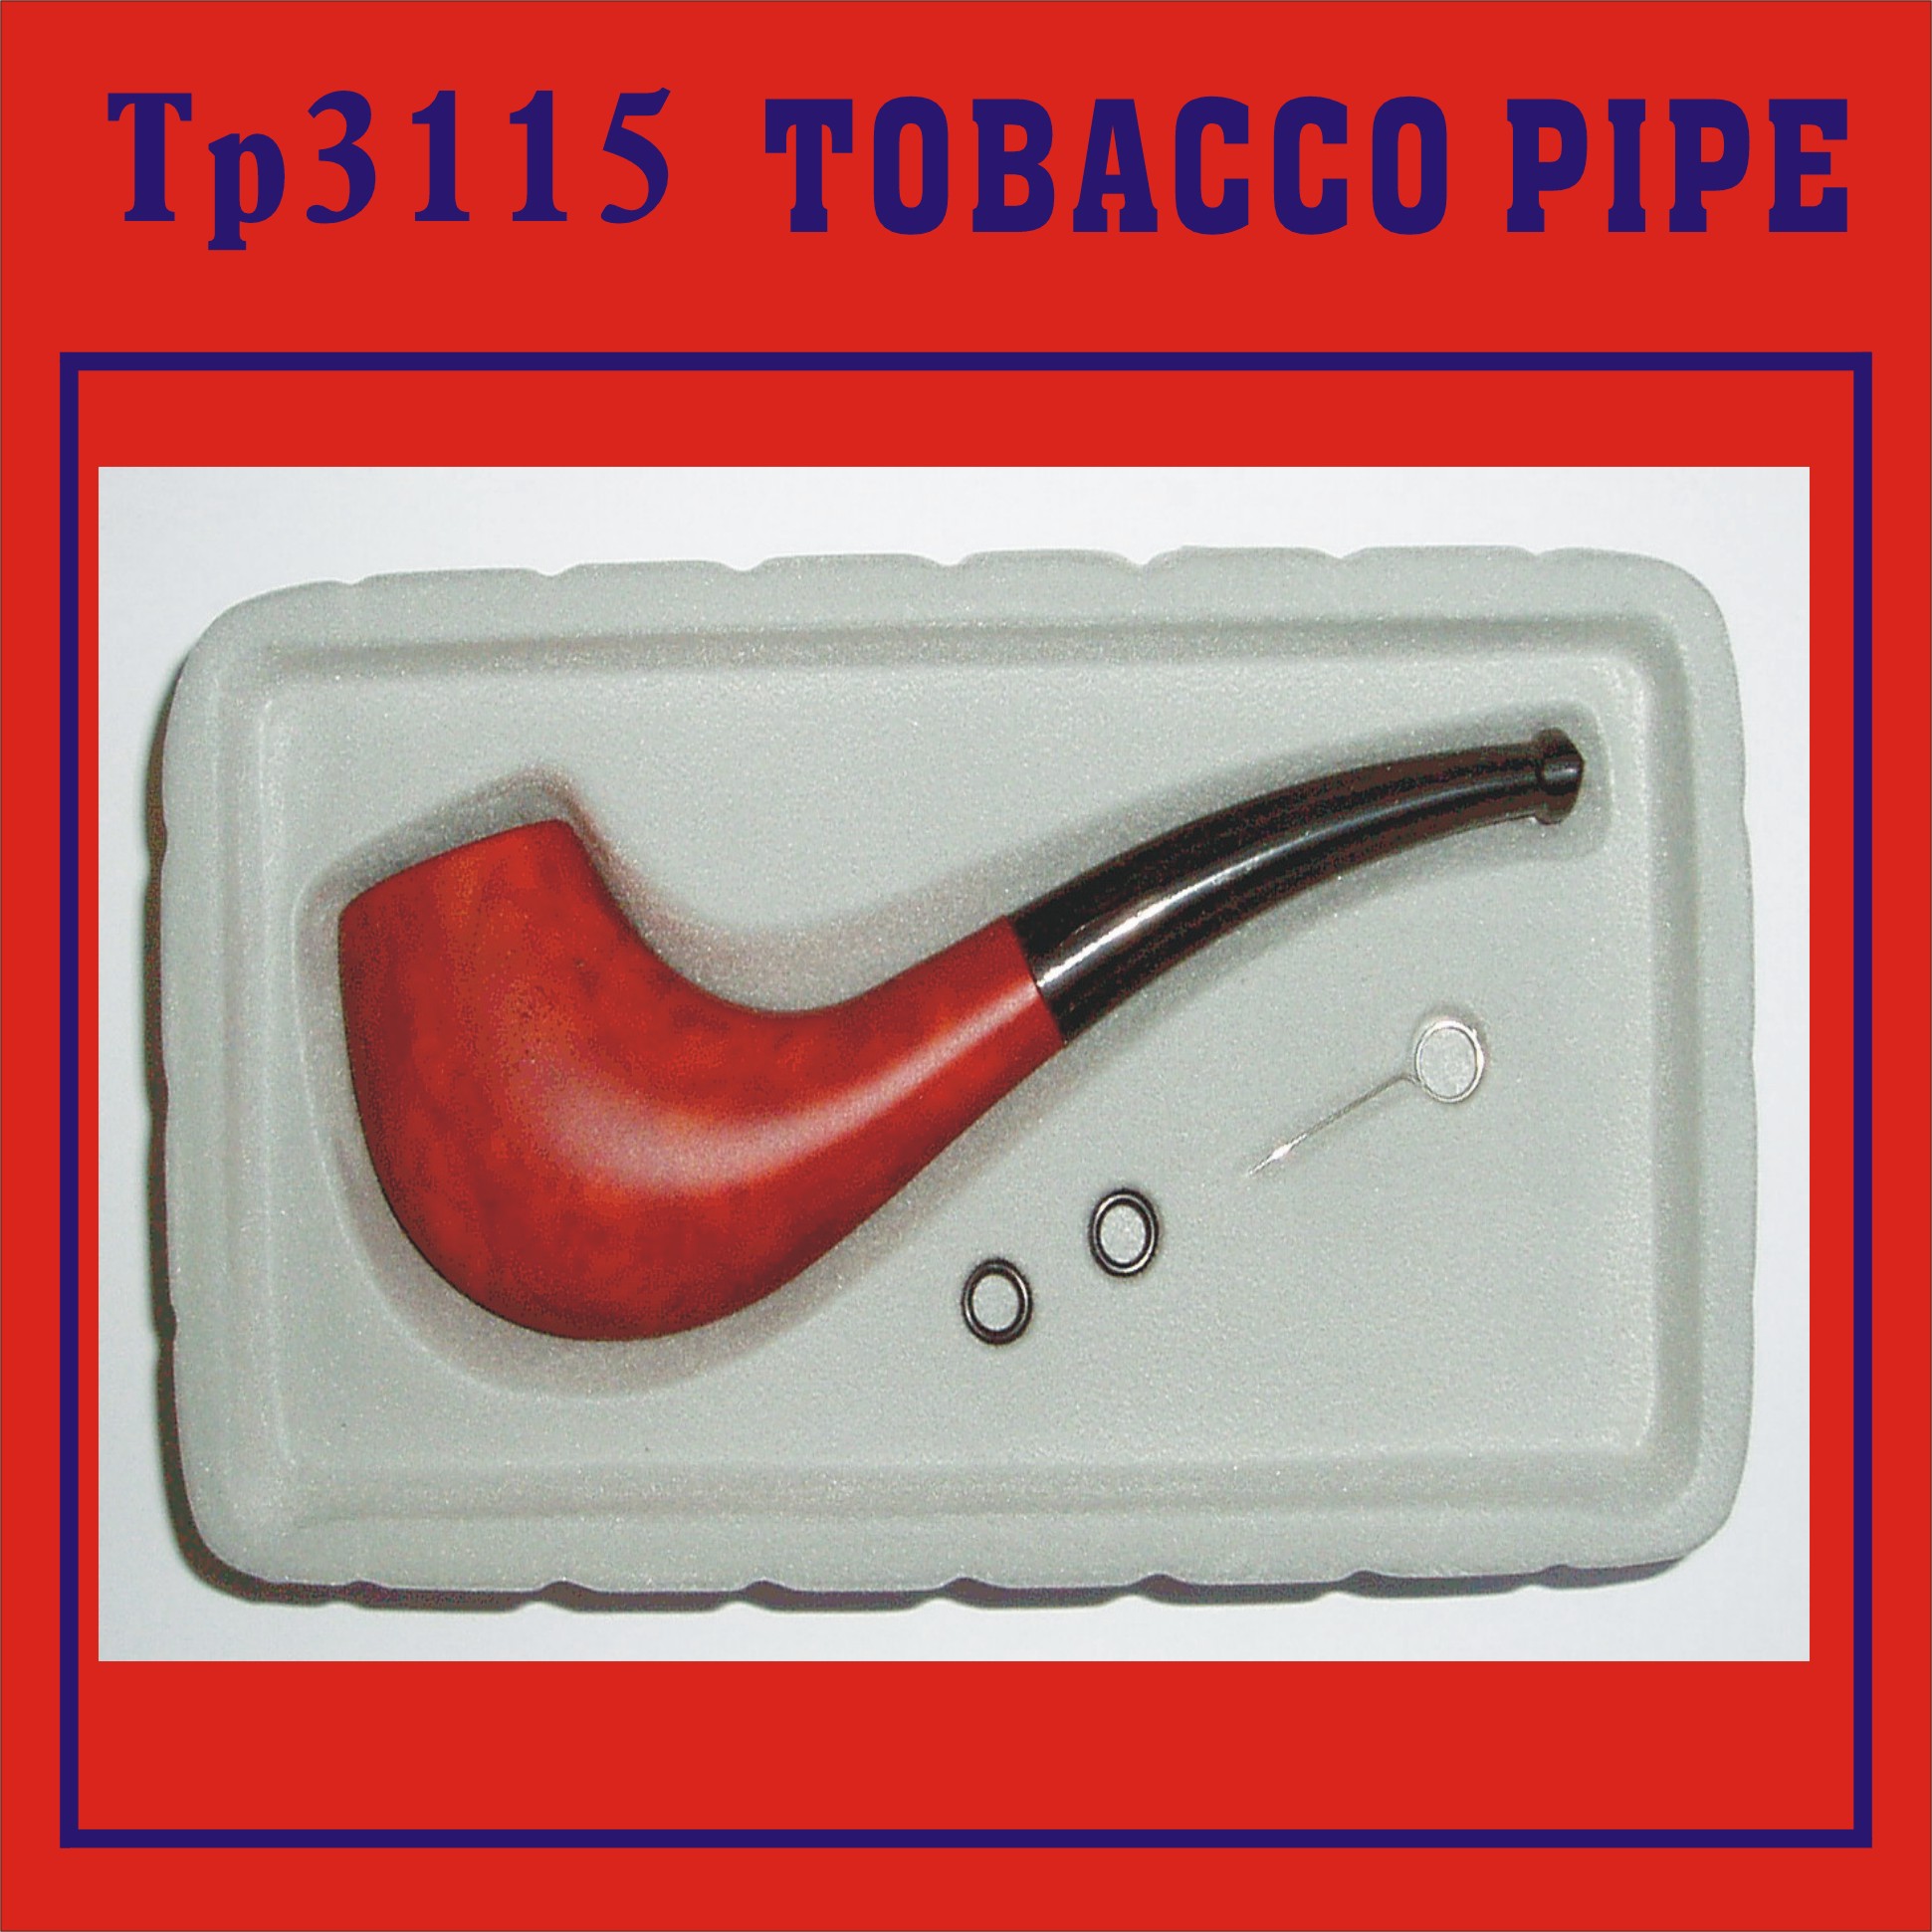  Ingreso en Pipaforo - Página 2 Buena+calidad+tubos+recyle+tabaco,+pipa+de+madera,+pl%C3%A1stico+tabaco+tabaco+tuber%C3%ADa